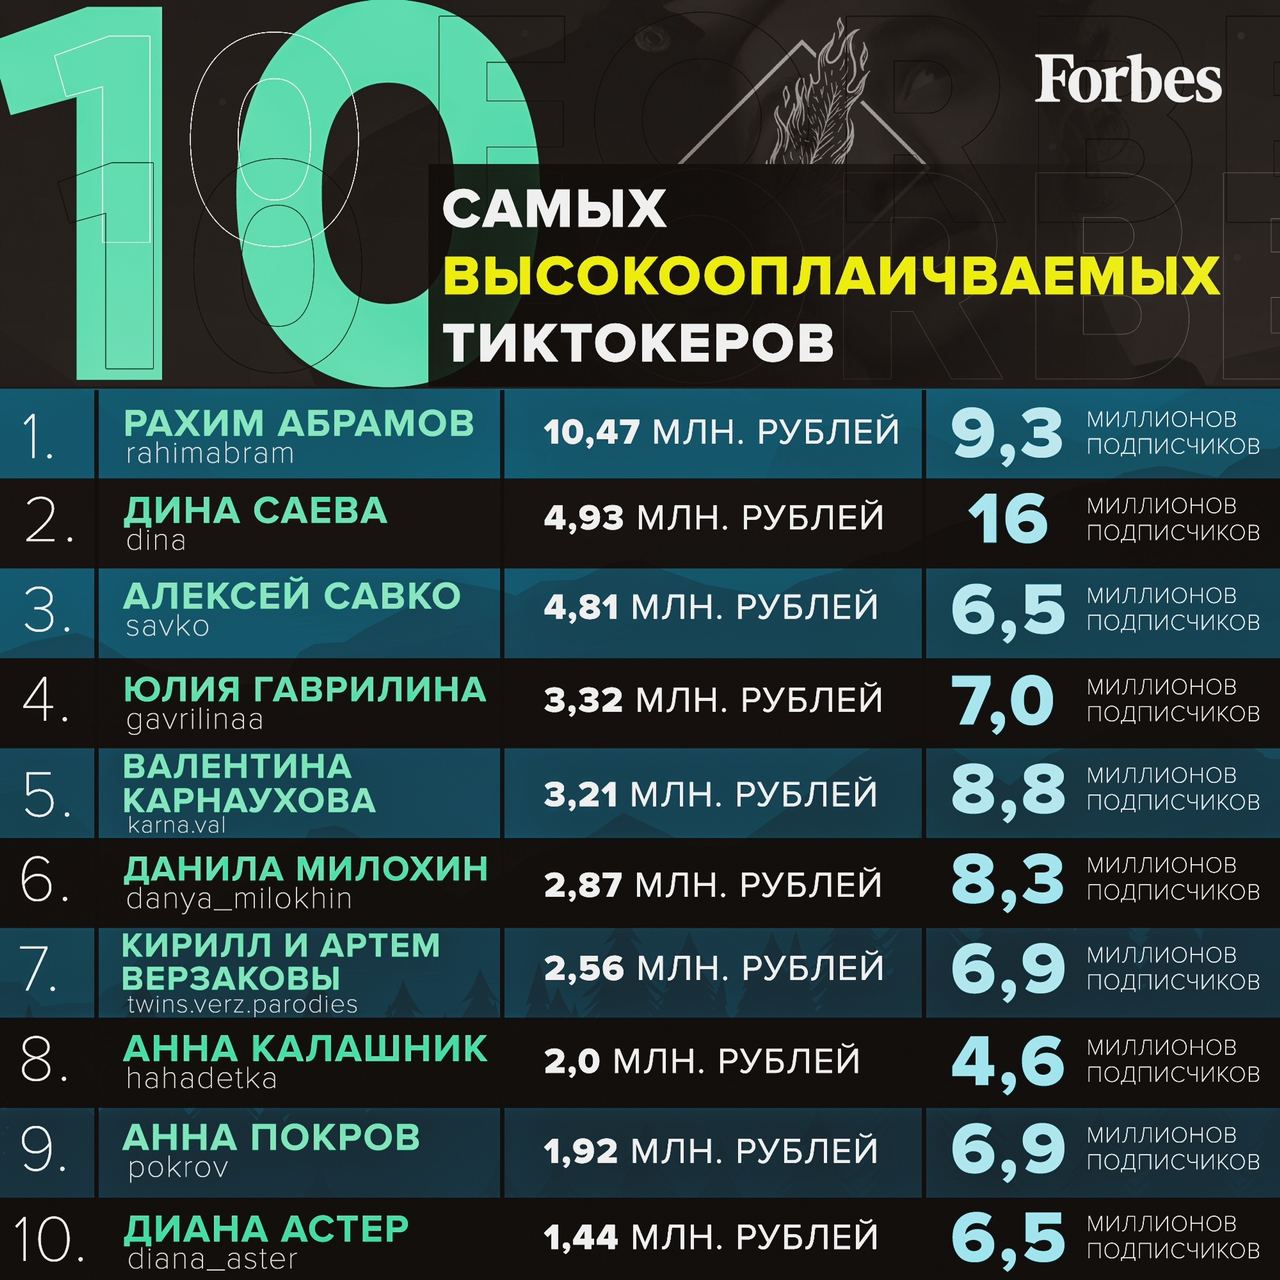 Когда зарабатывает тик ток в россии. Форбс тиктокеры. Списка самых высокооплачиваемых тиктокеров. Форбс самые оплачиваемые тиктокеры. Топ самых высокооплачиваемых тиктокеров России.